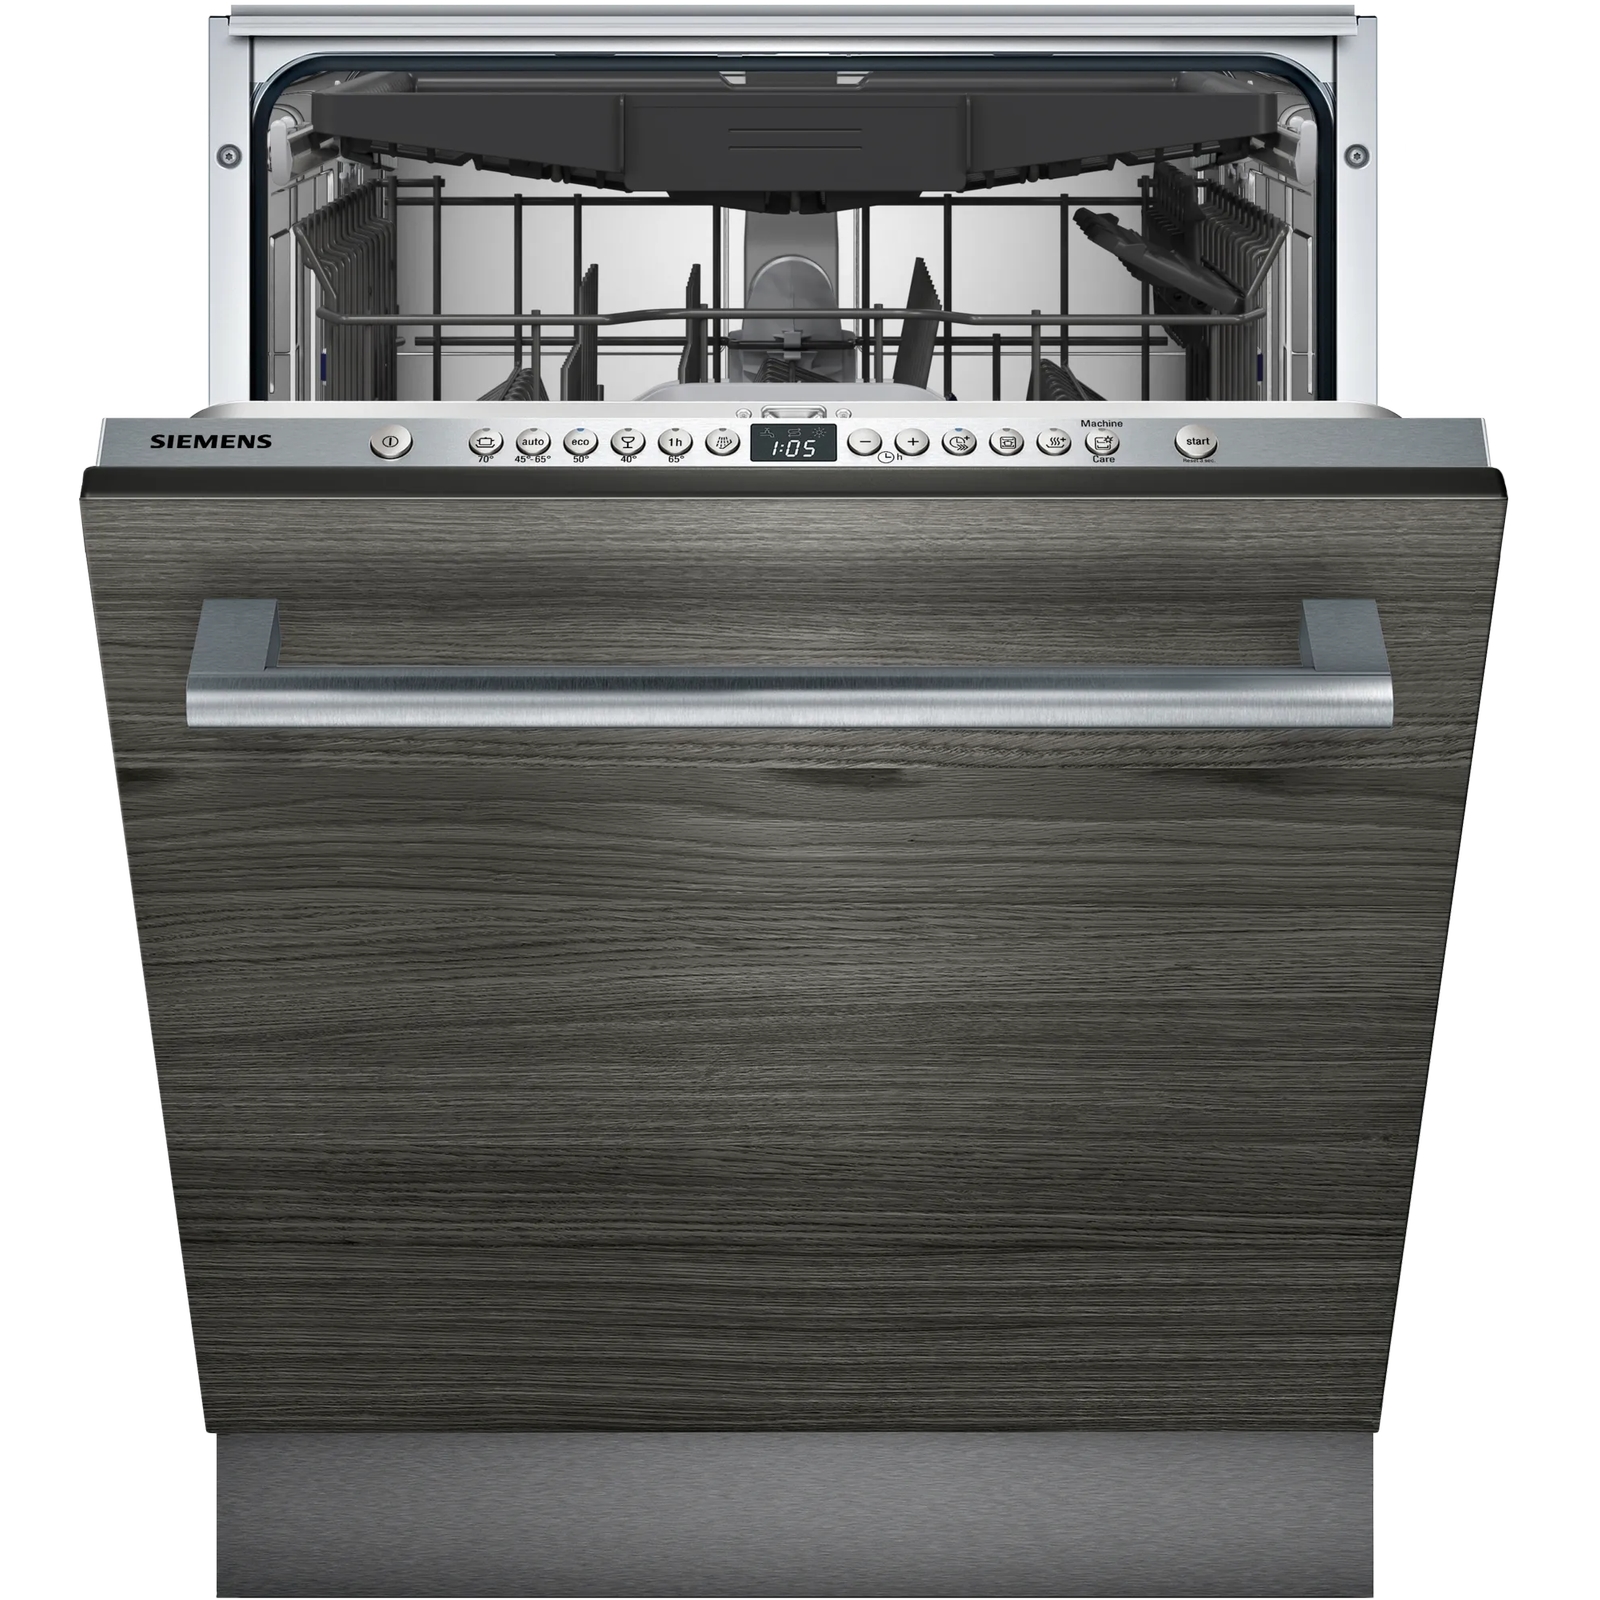 Встраиваемая посудомоечная машина Siemens SN636X06KE встраиваемая посудомоечная машина siemens sn63hx42ve